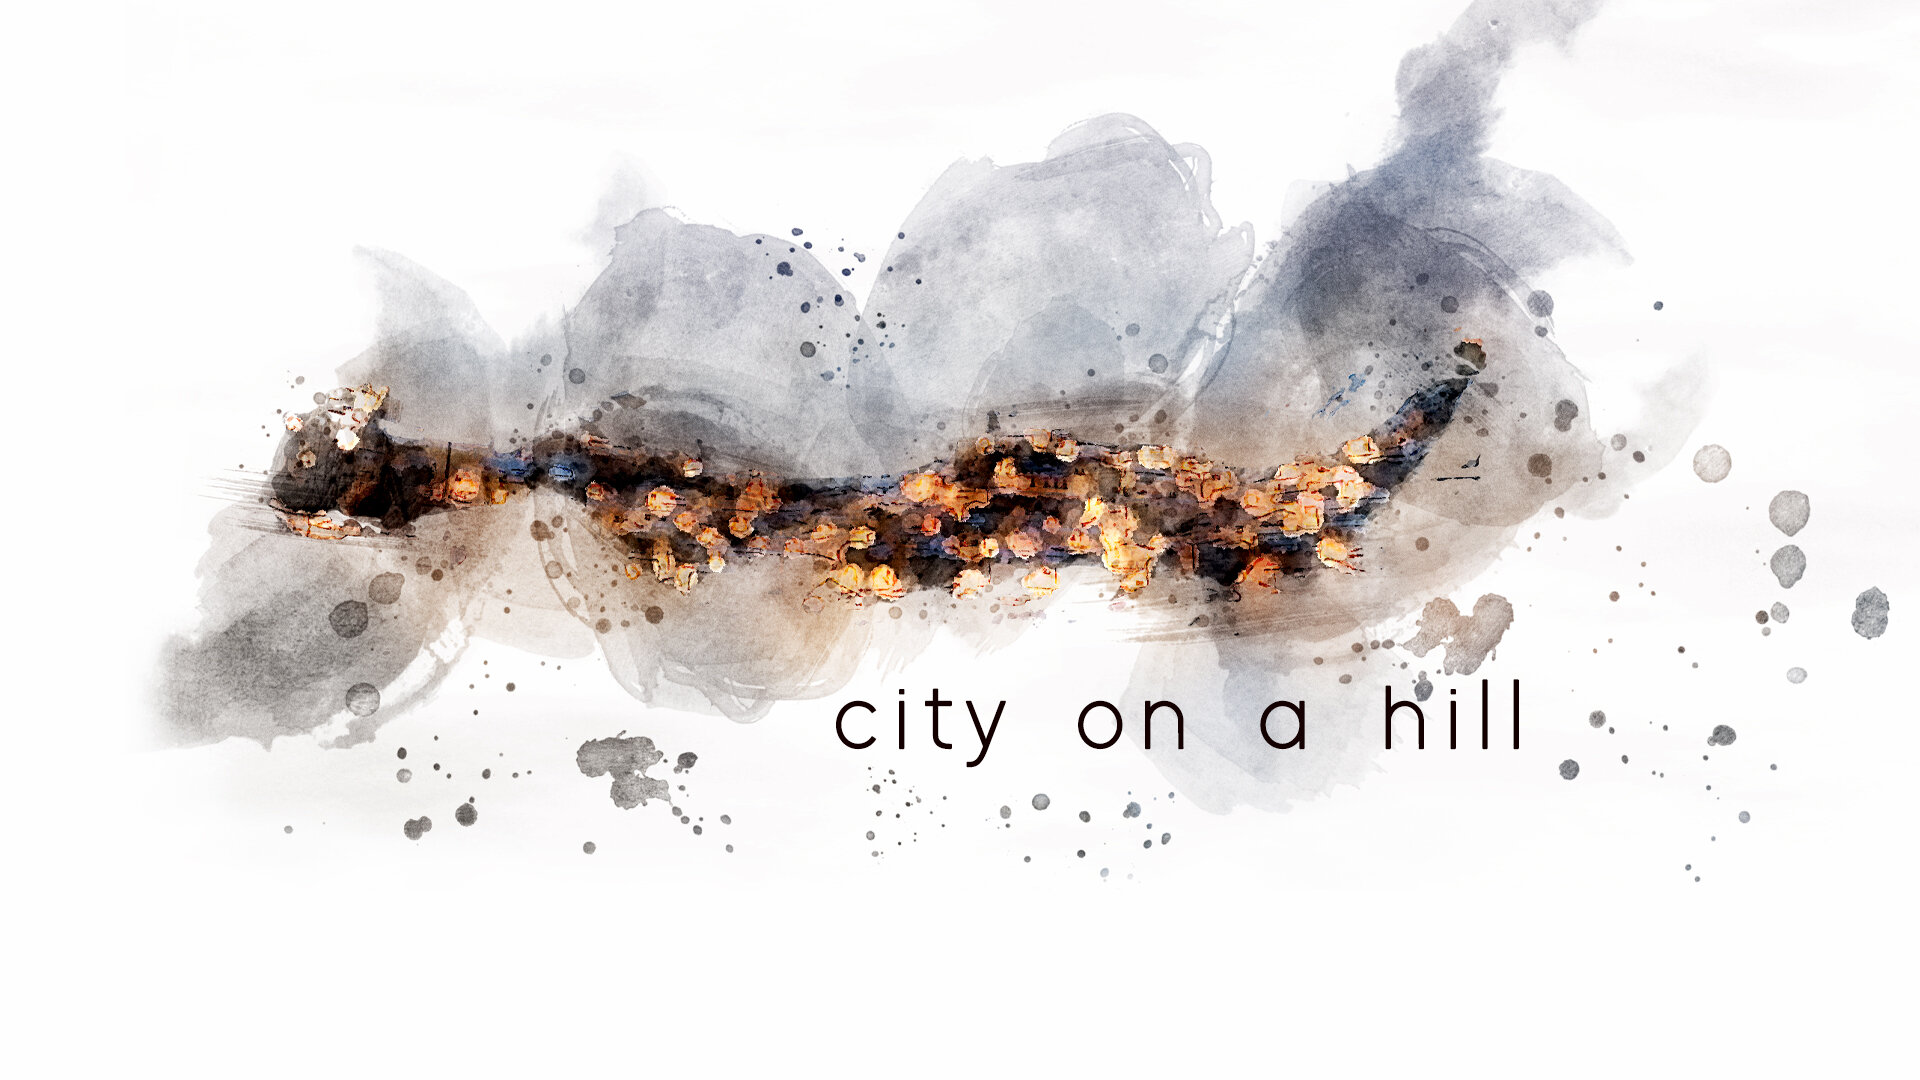 CityonHill_v2-art.jpg